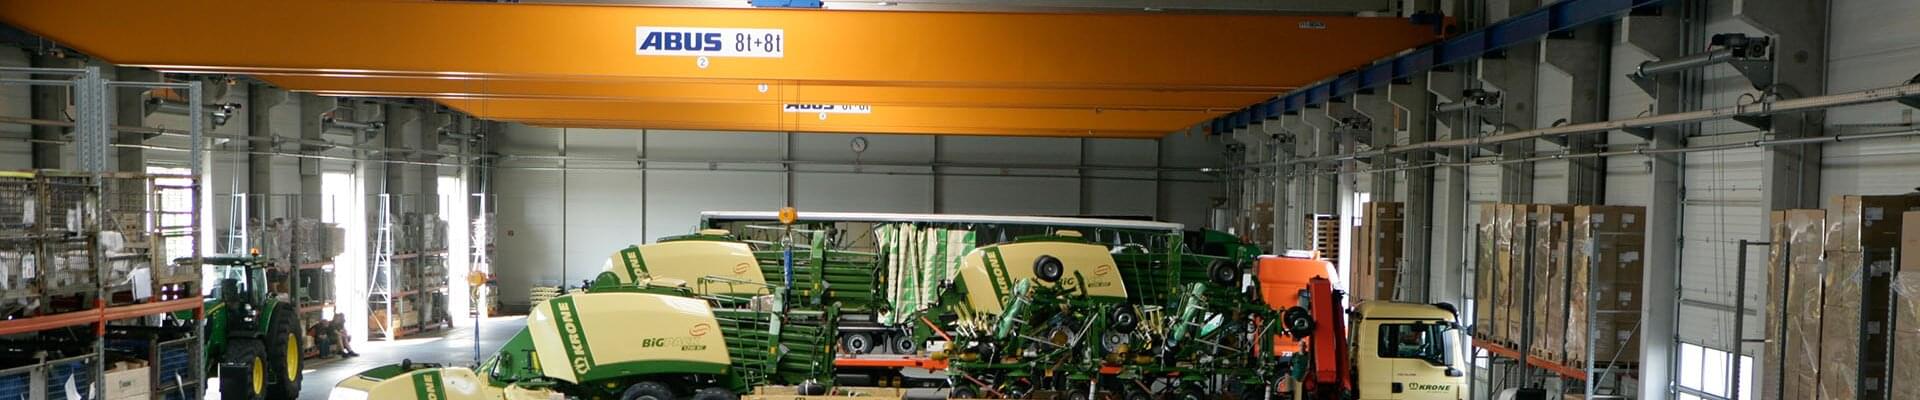 Kran mit Tragfähigkeit von 8 t und 8 t in Produktionshalle für Landmaschinentechnik in Deutschland